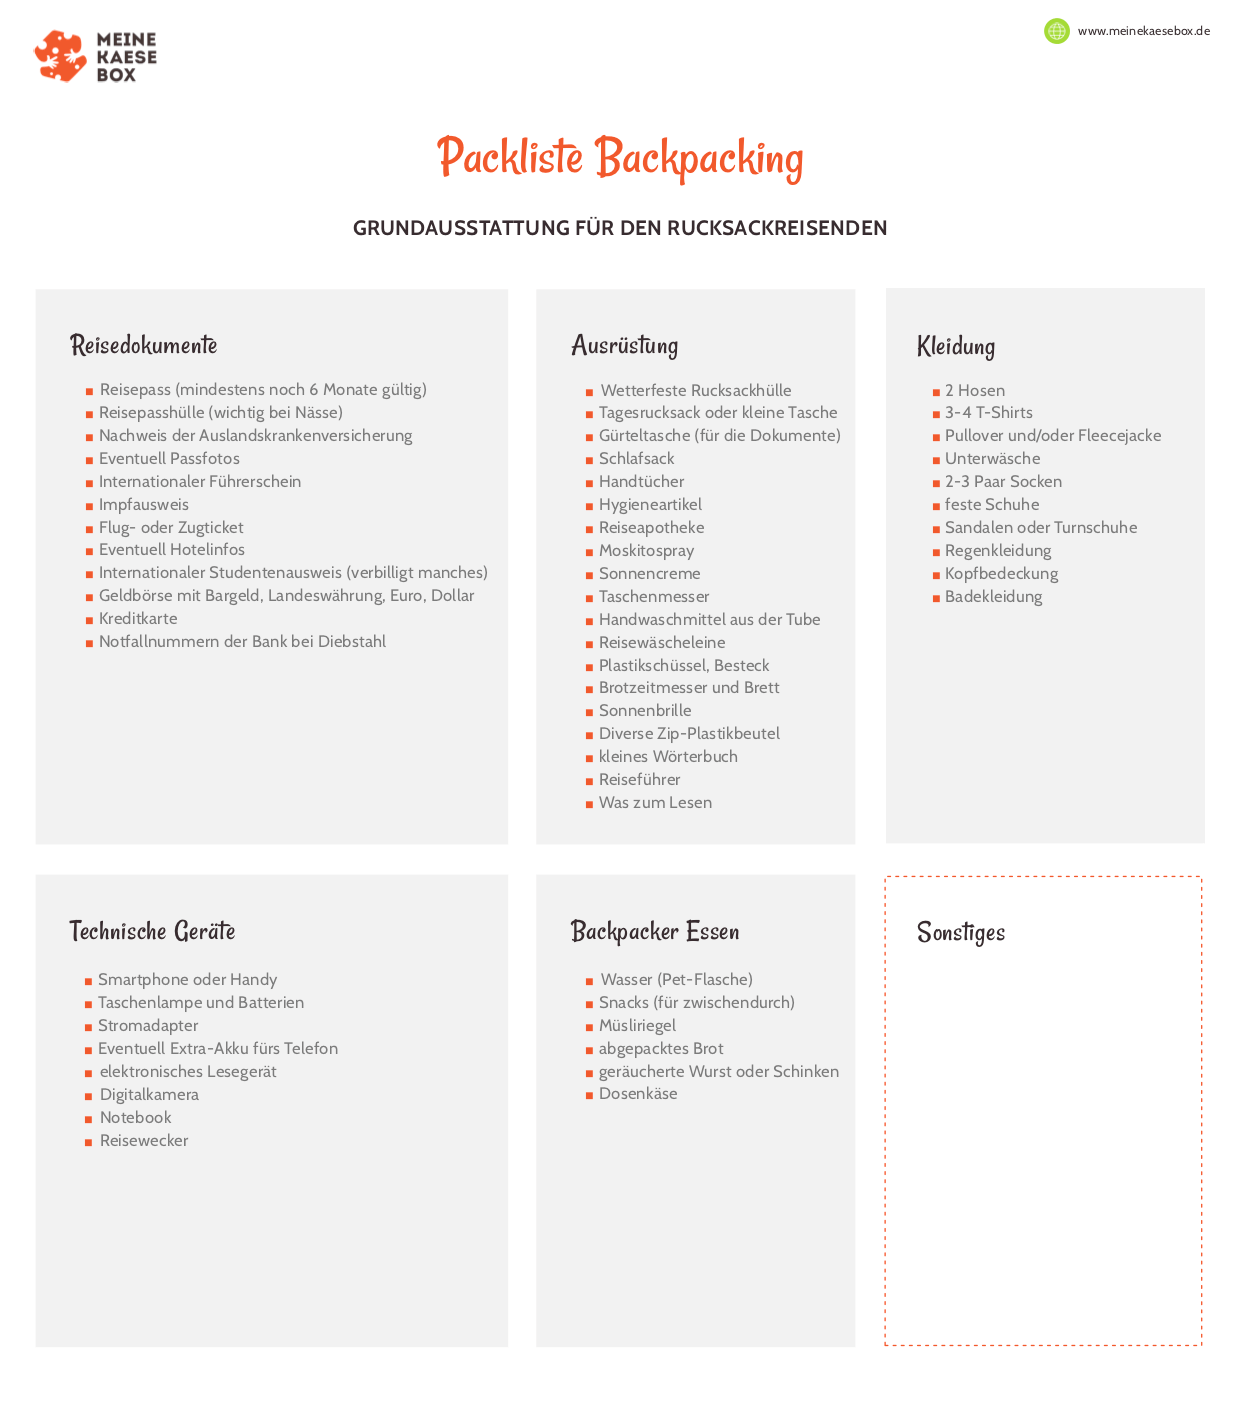 Die Backpacking Packliste PDF-Datei